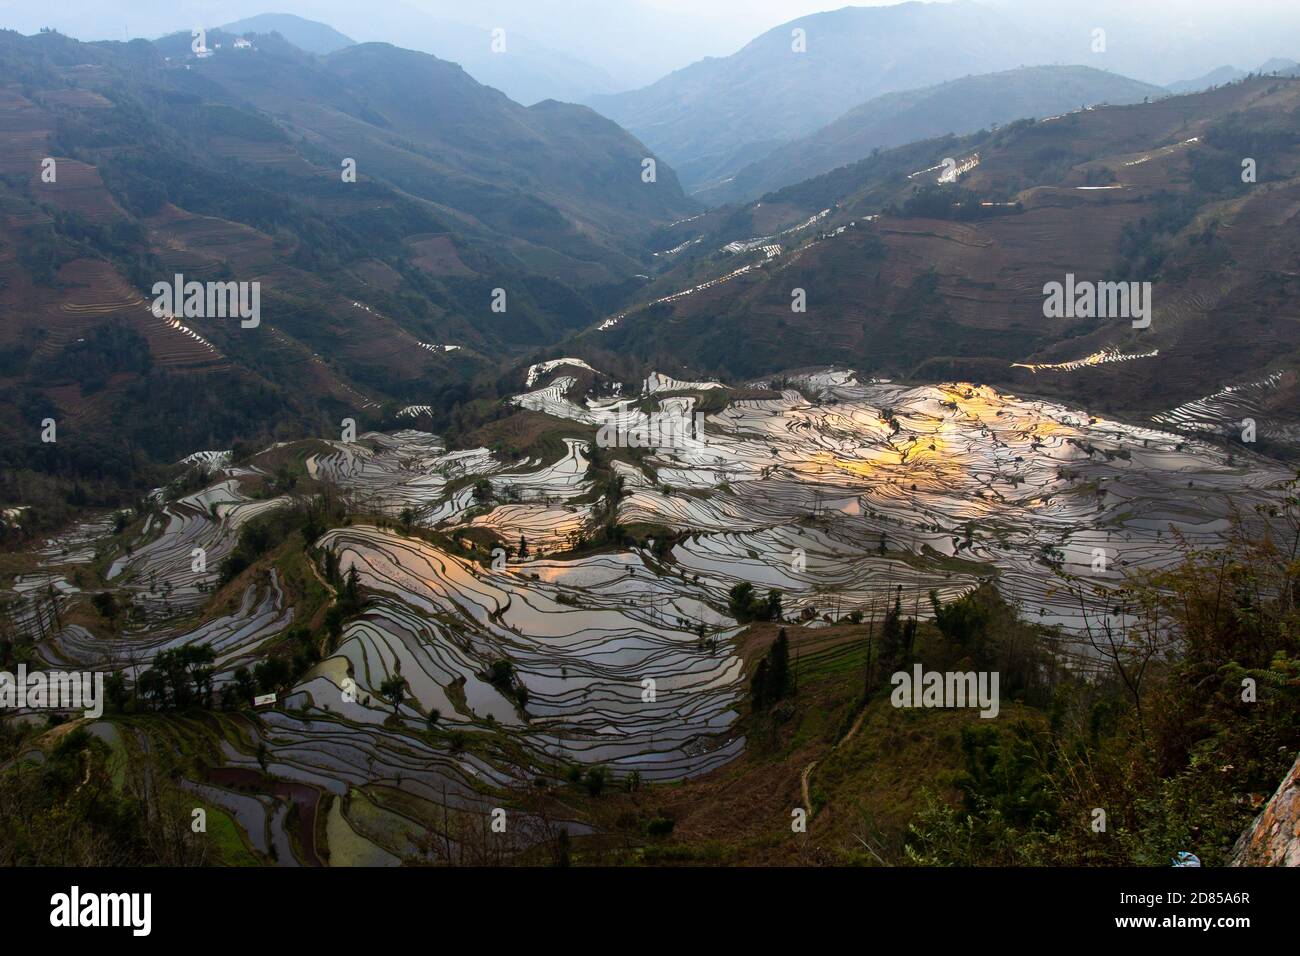 Yuan Yang Rice Terrace in Cina, la più grande terrazza di riso del mondo, patrimonio mondiale dell'umanità è nella provincia di Yunnan Foto Stock